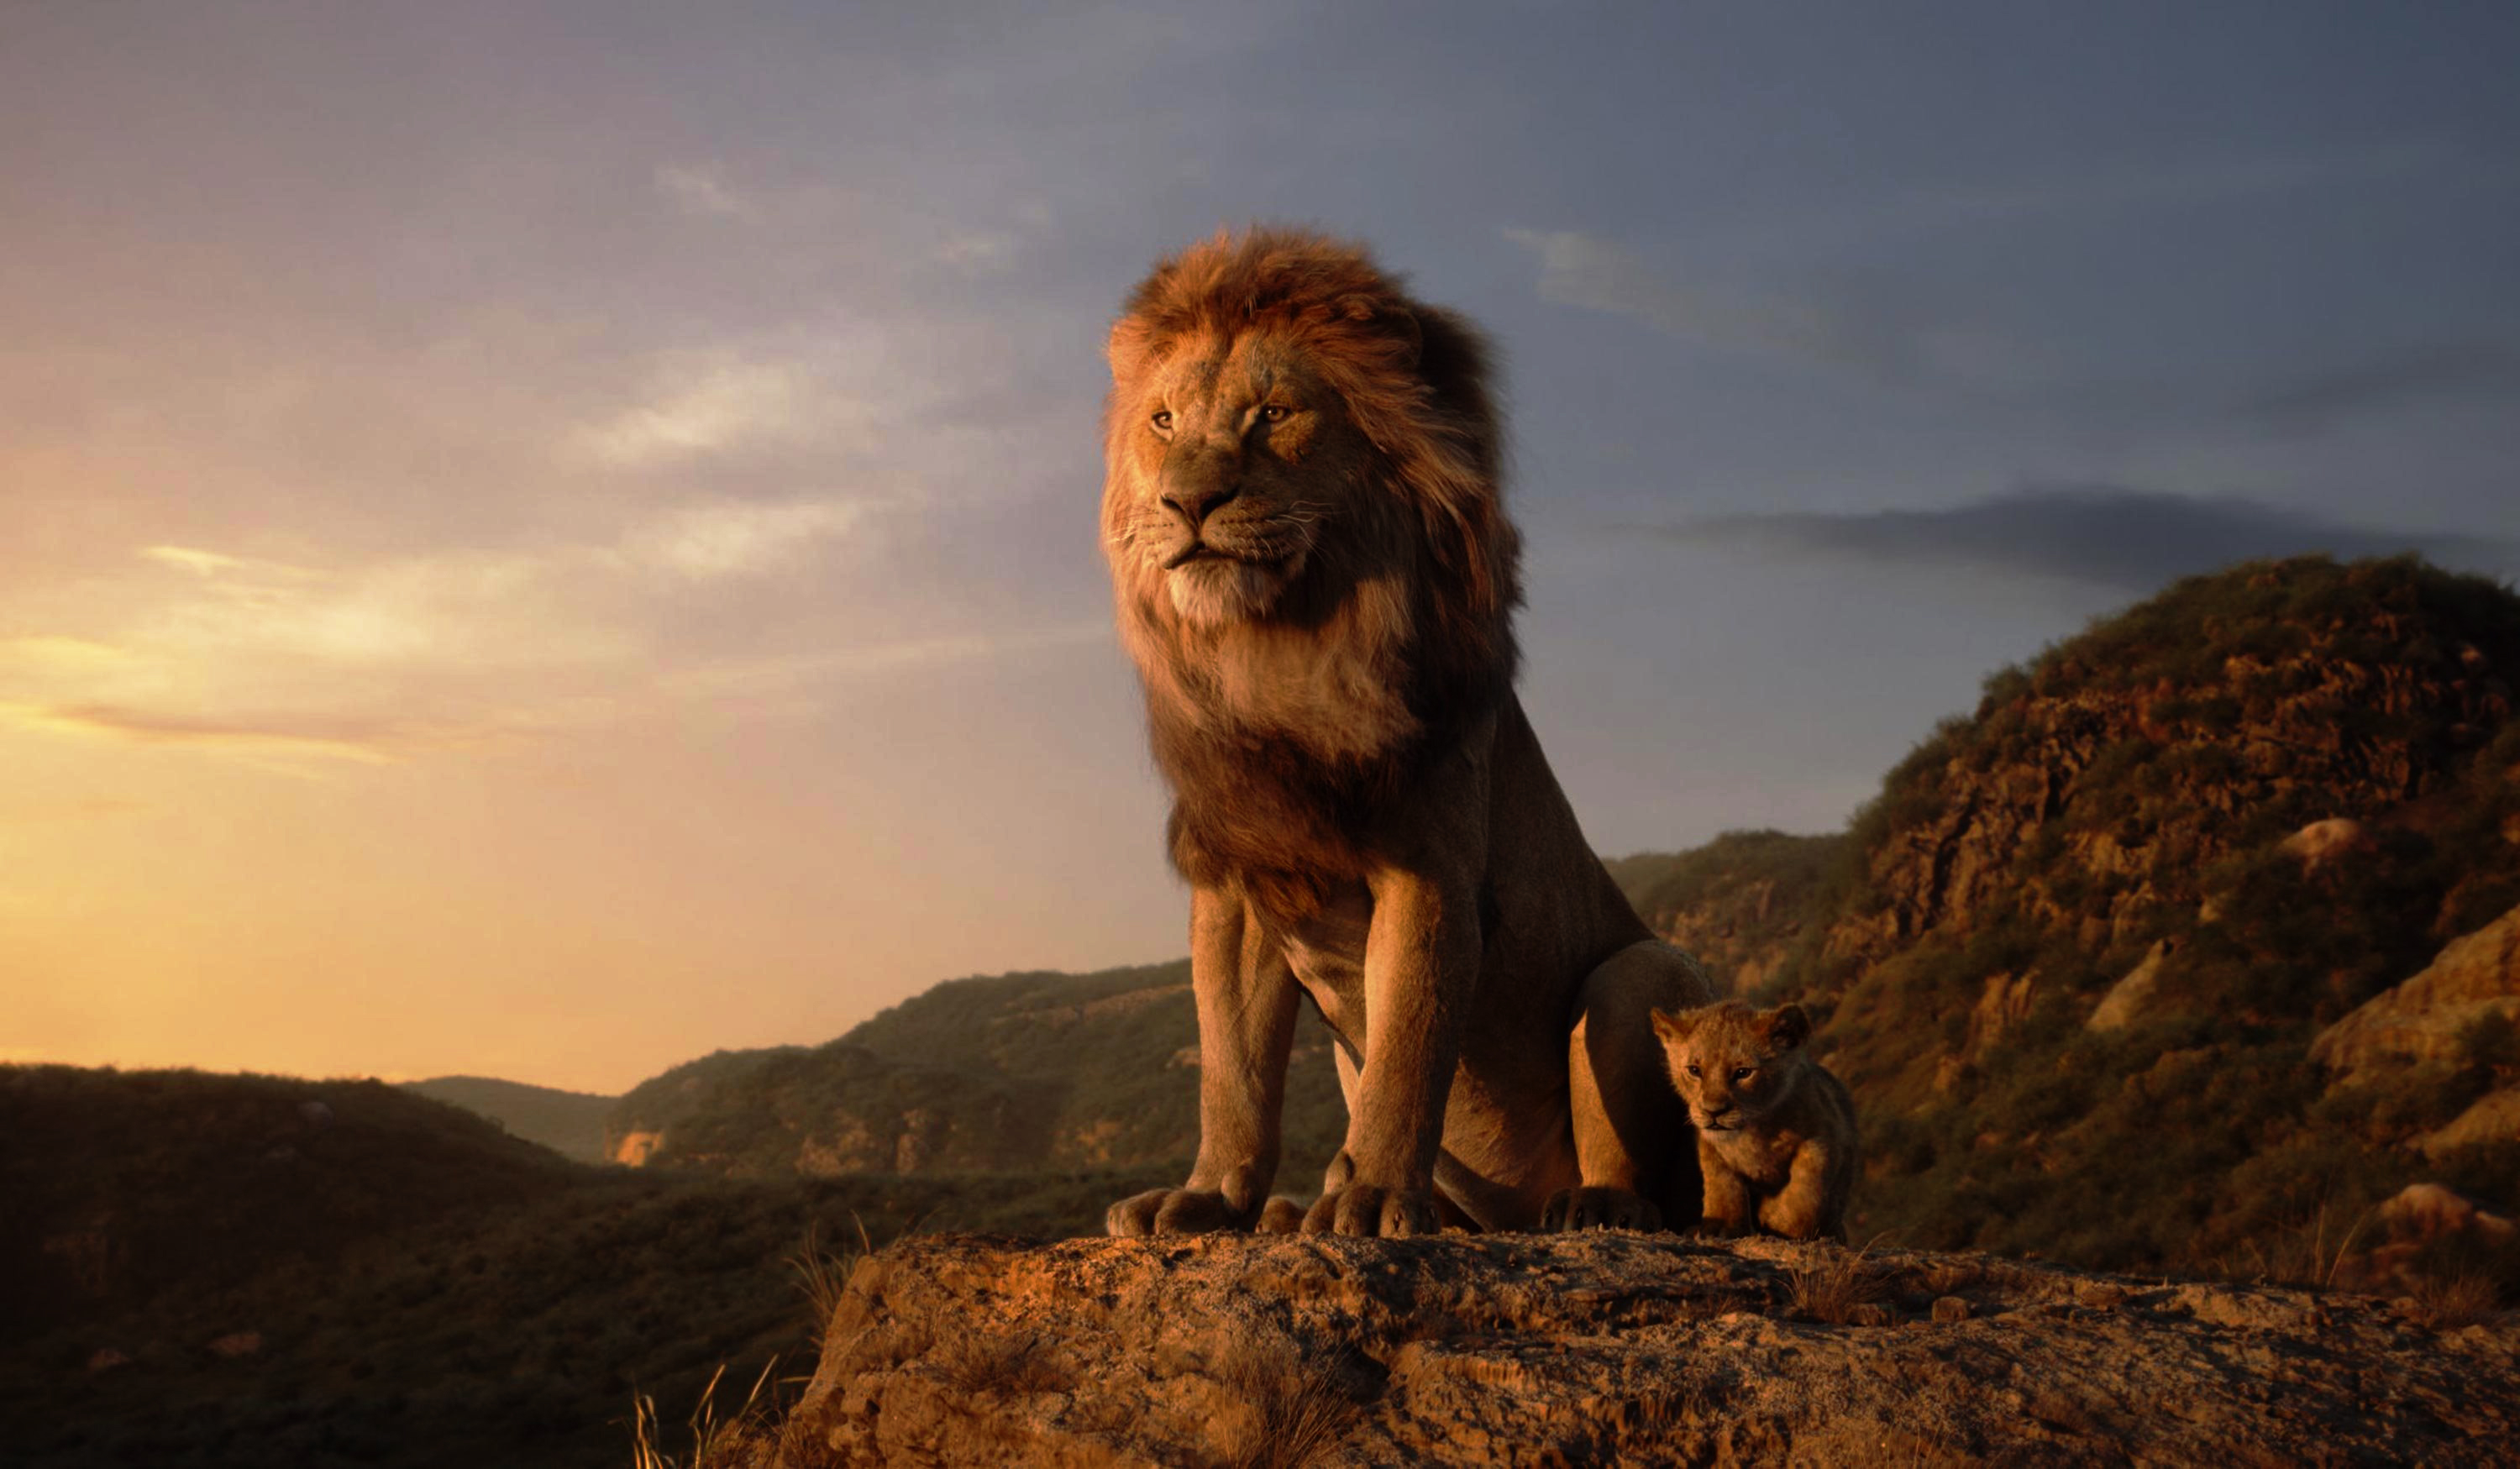 The Lion King Wallpapers là bộ sưu tập tuyệt vời cho những fan hâm mộ của bộ phim nổi tiếng The Lion King. Khám phá lại thế giới chiến đấu trong hoang dã với những bức ảnh đẹp mắt về những nhân vật đầy tinh thần như Simba, Nala và Mufasa. Hãy để những tấm hình tuyệt vời này truyền cảm hứng cho bạn và tăng thêm niềm đam mê với bộ phim kinh điển này.